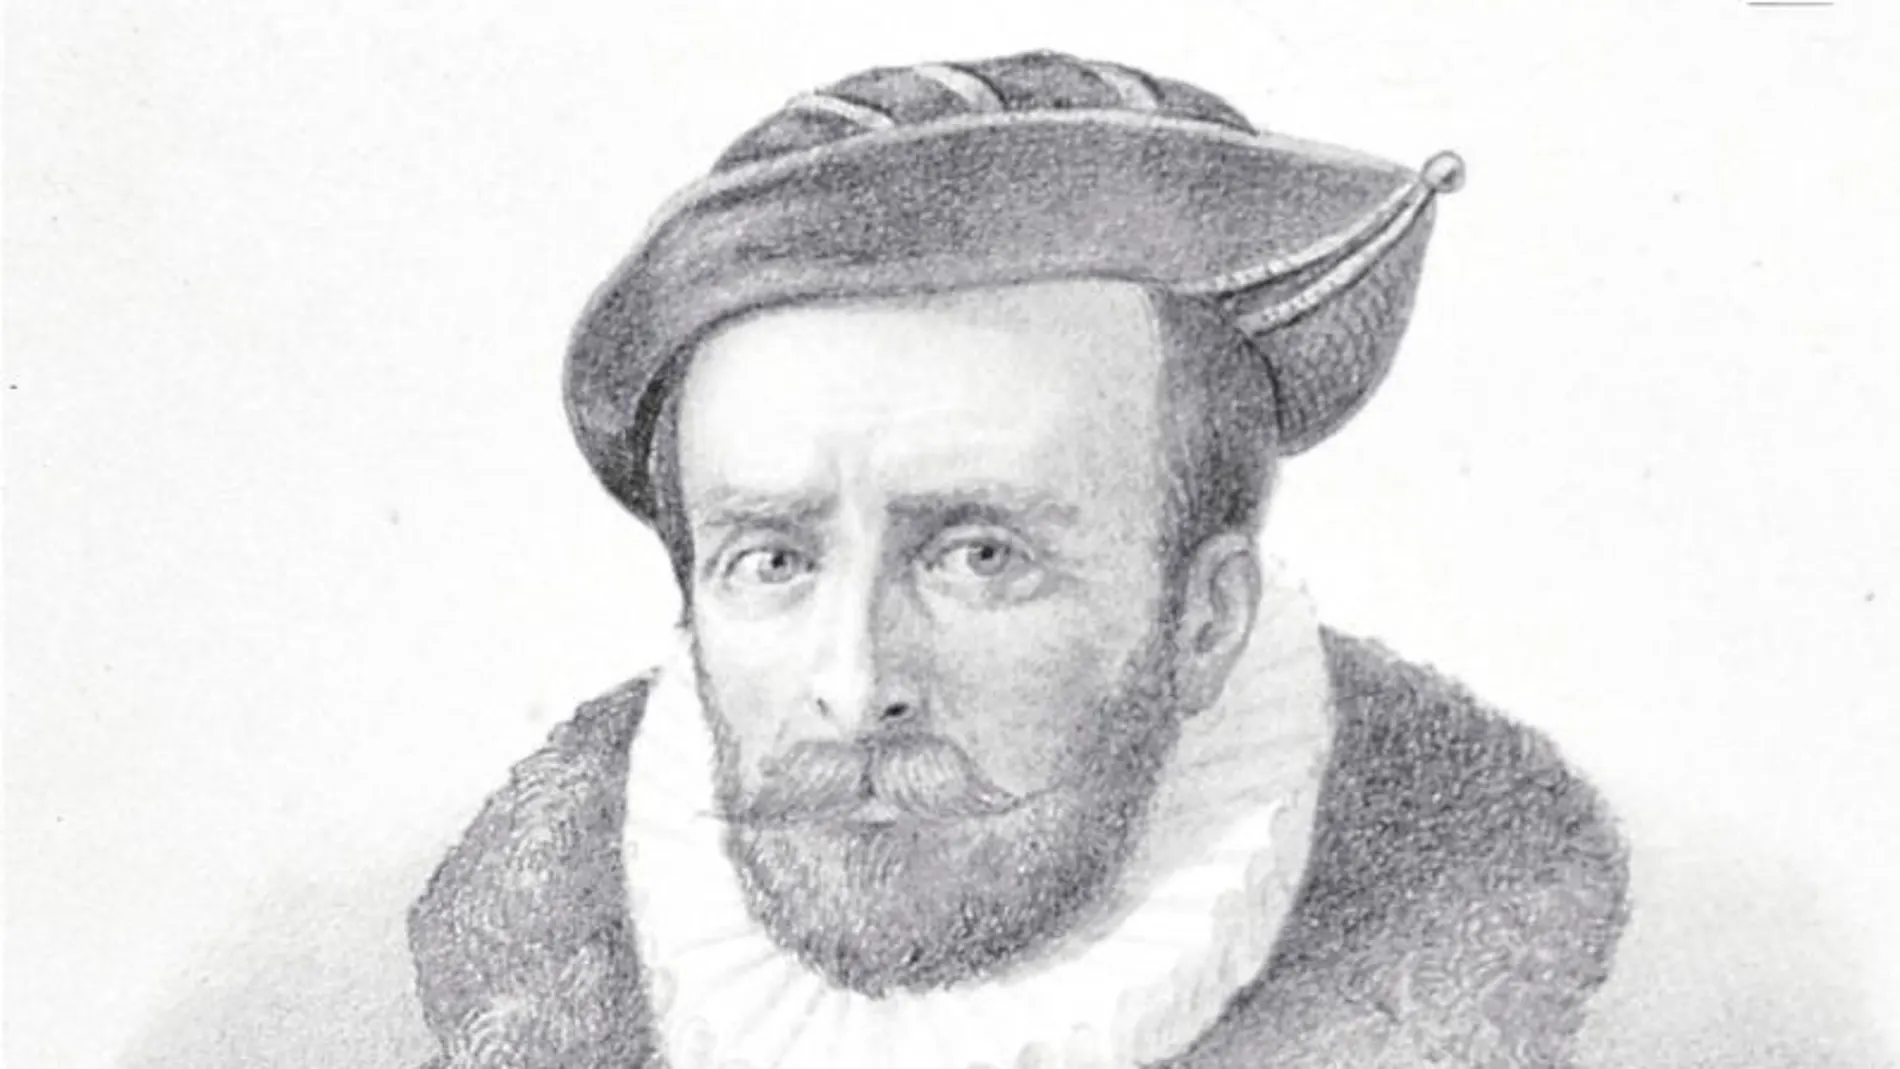 El navegante Álvaro de Mendaña, que llevó a cabo dos expediciones al Pacífico, nació en El Bierzo y murió en las Islas Salomón.